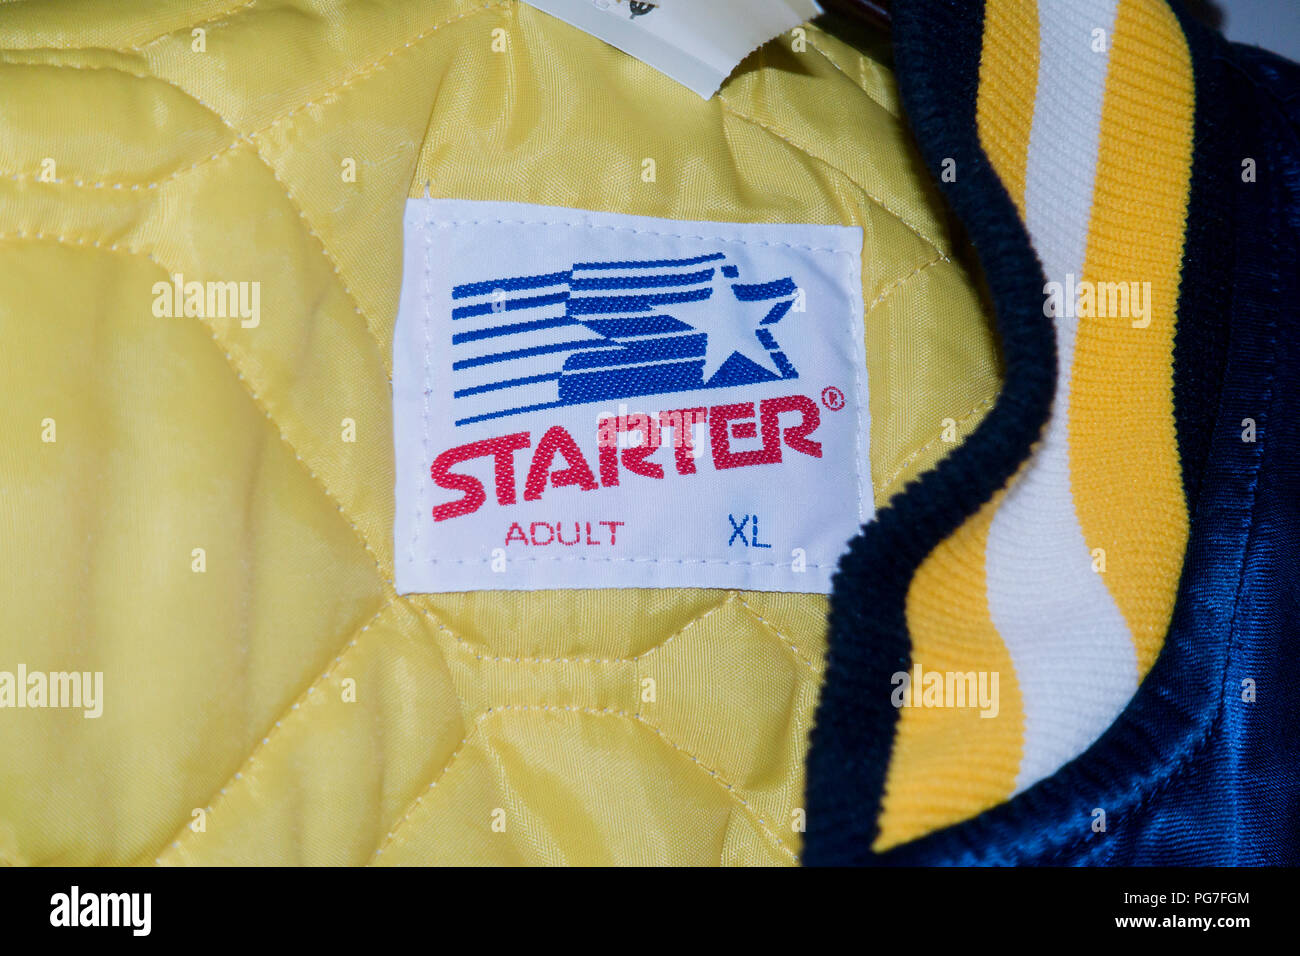 Giacca Starter dimensione di etichetta (Adulto XL) - USA Foto Stock